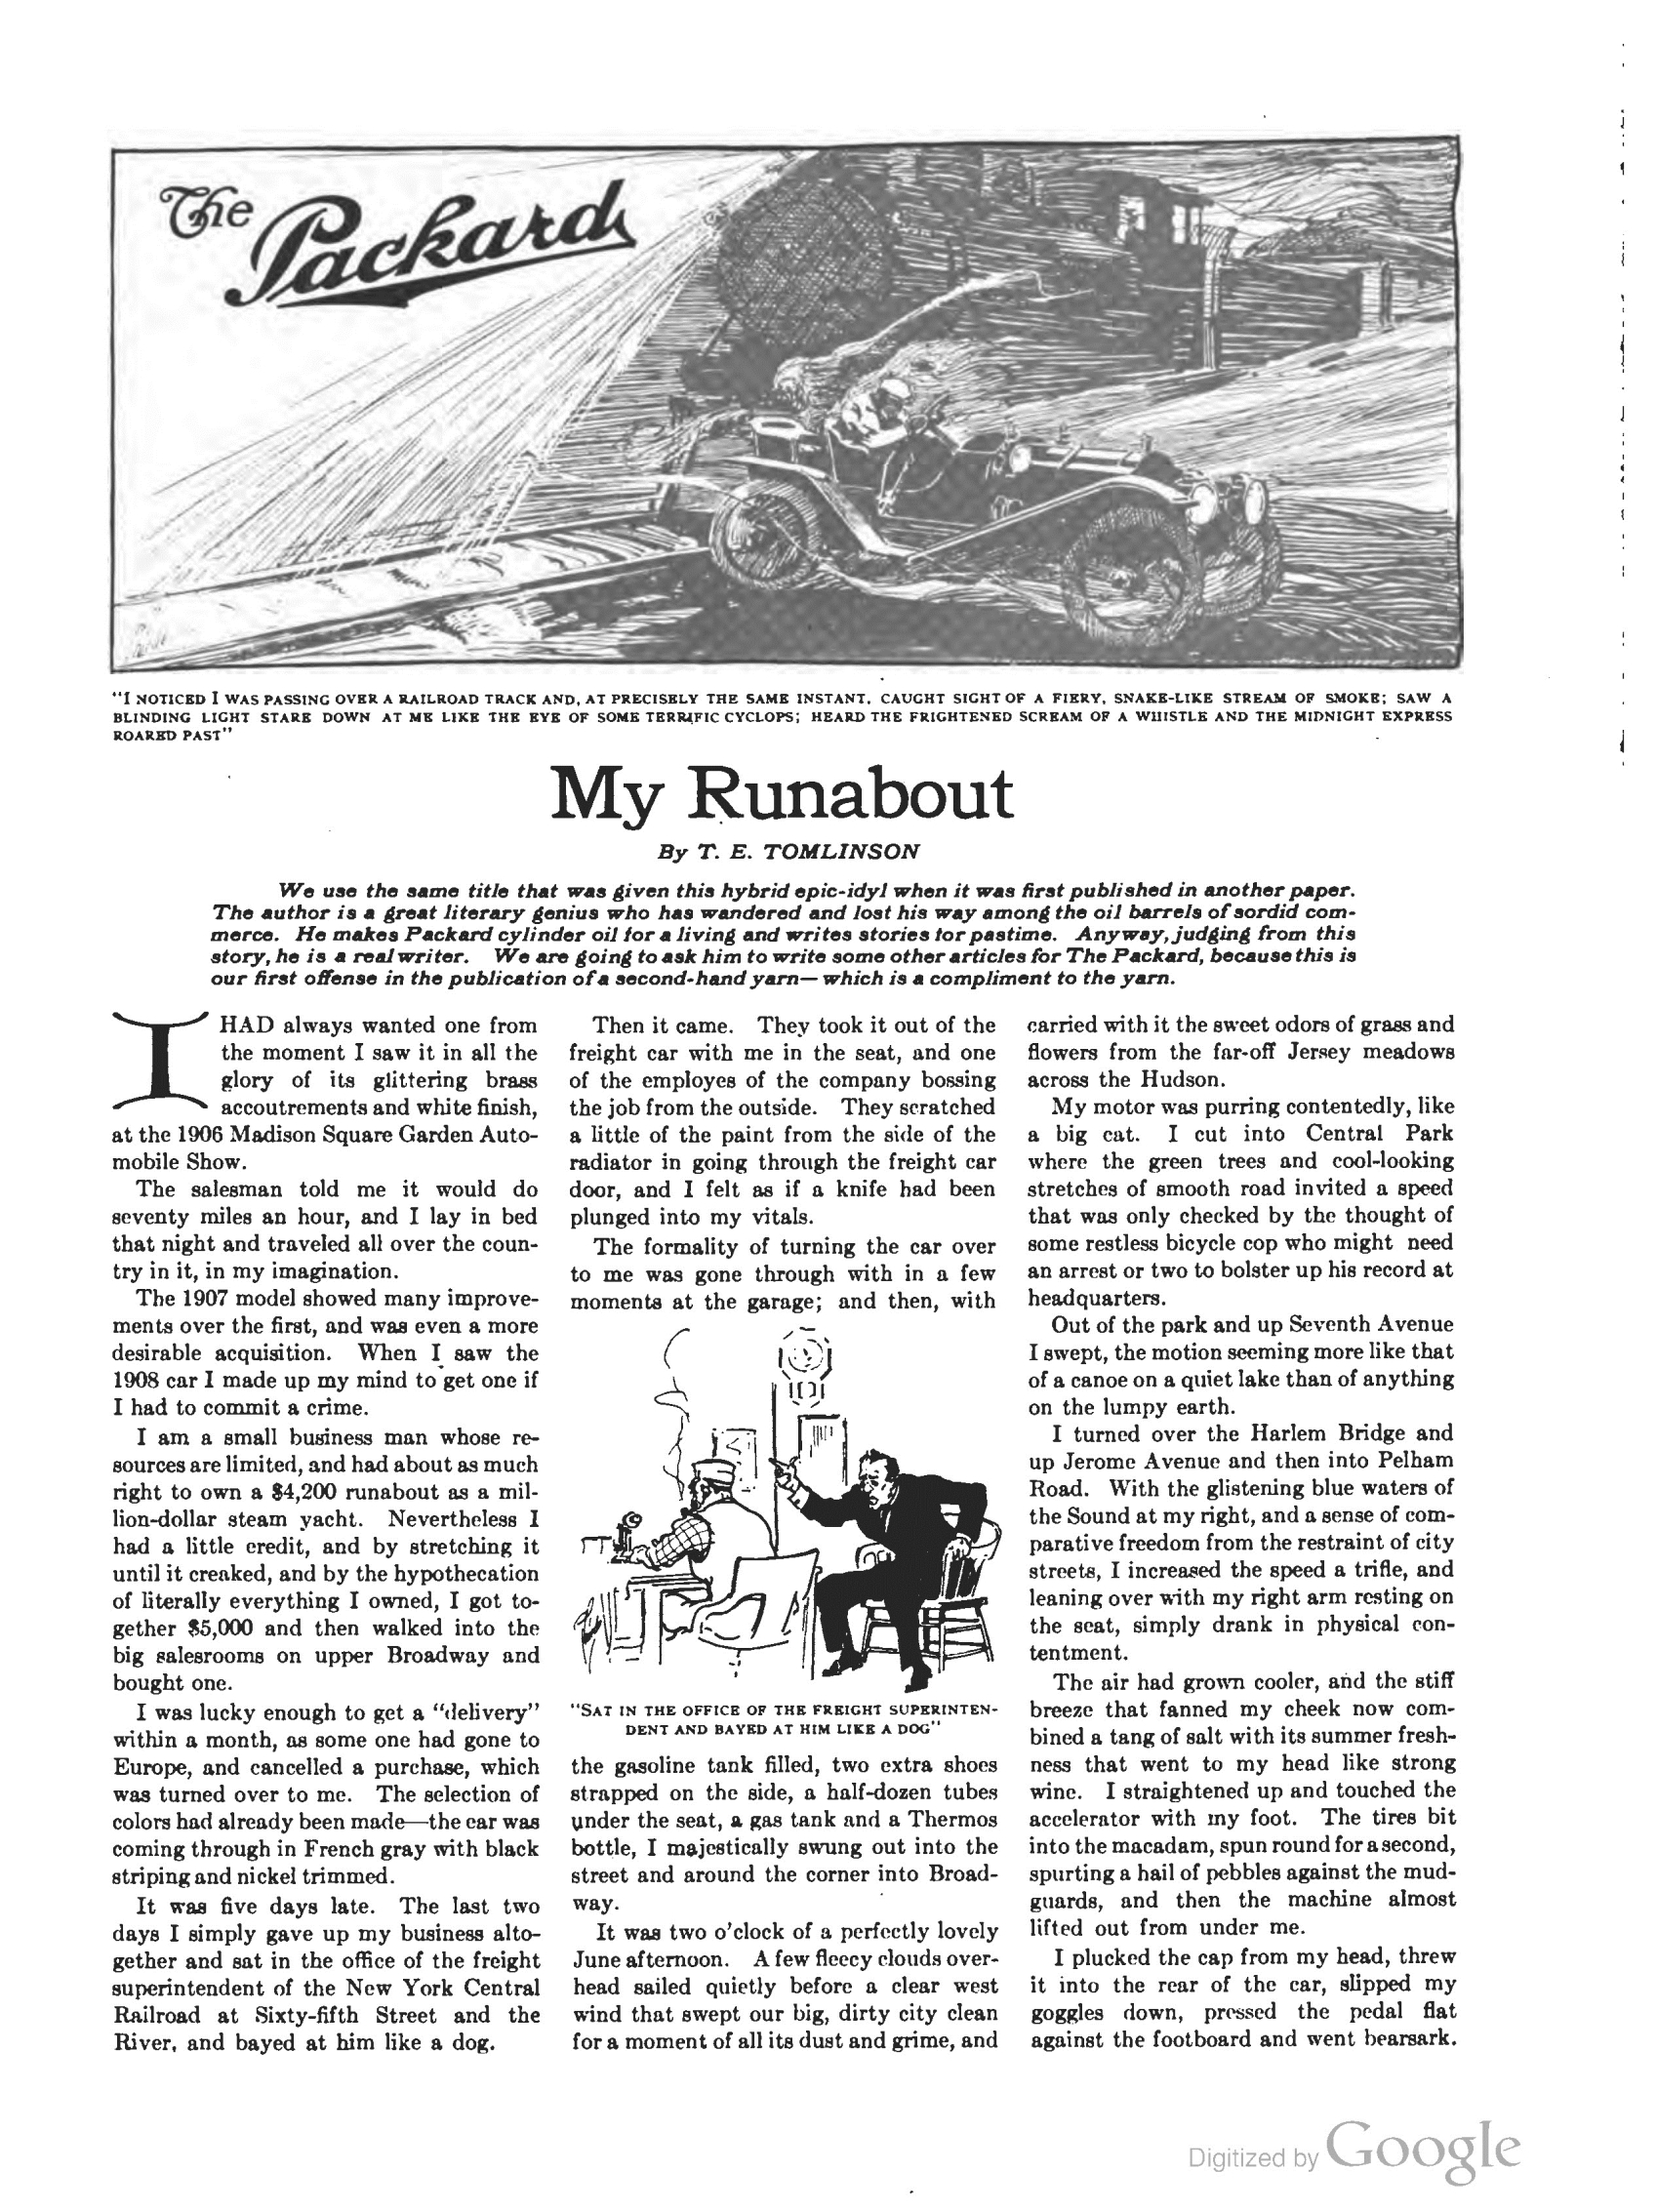 1910_The_Packard_Newsletter-195